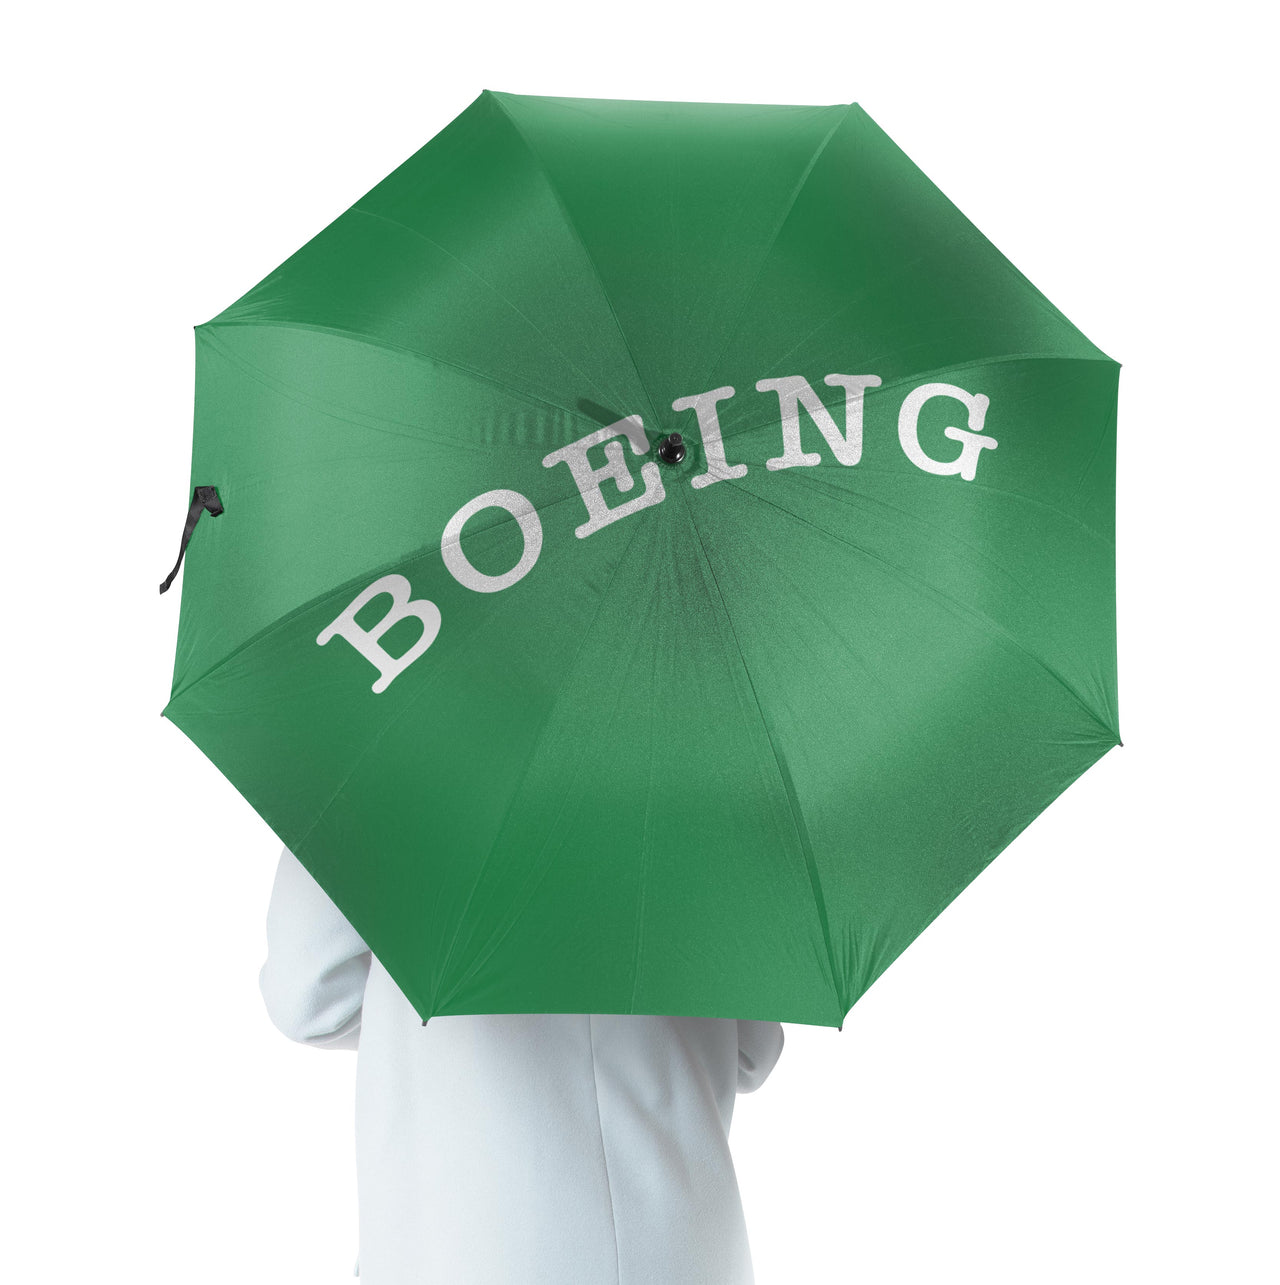 Special BOEING Text Designed Umbrella